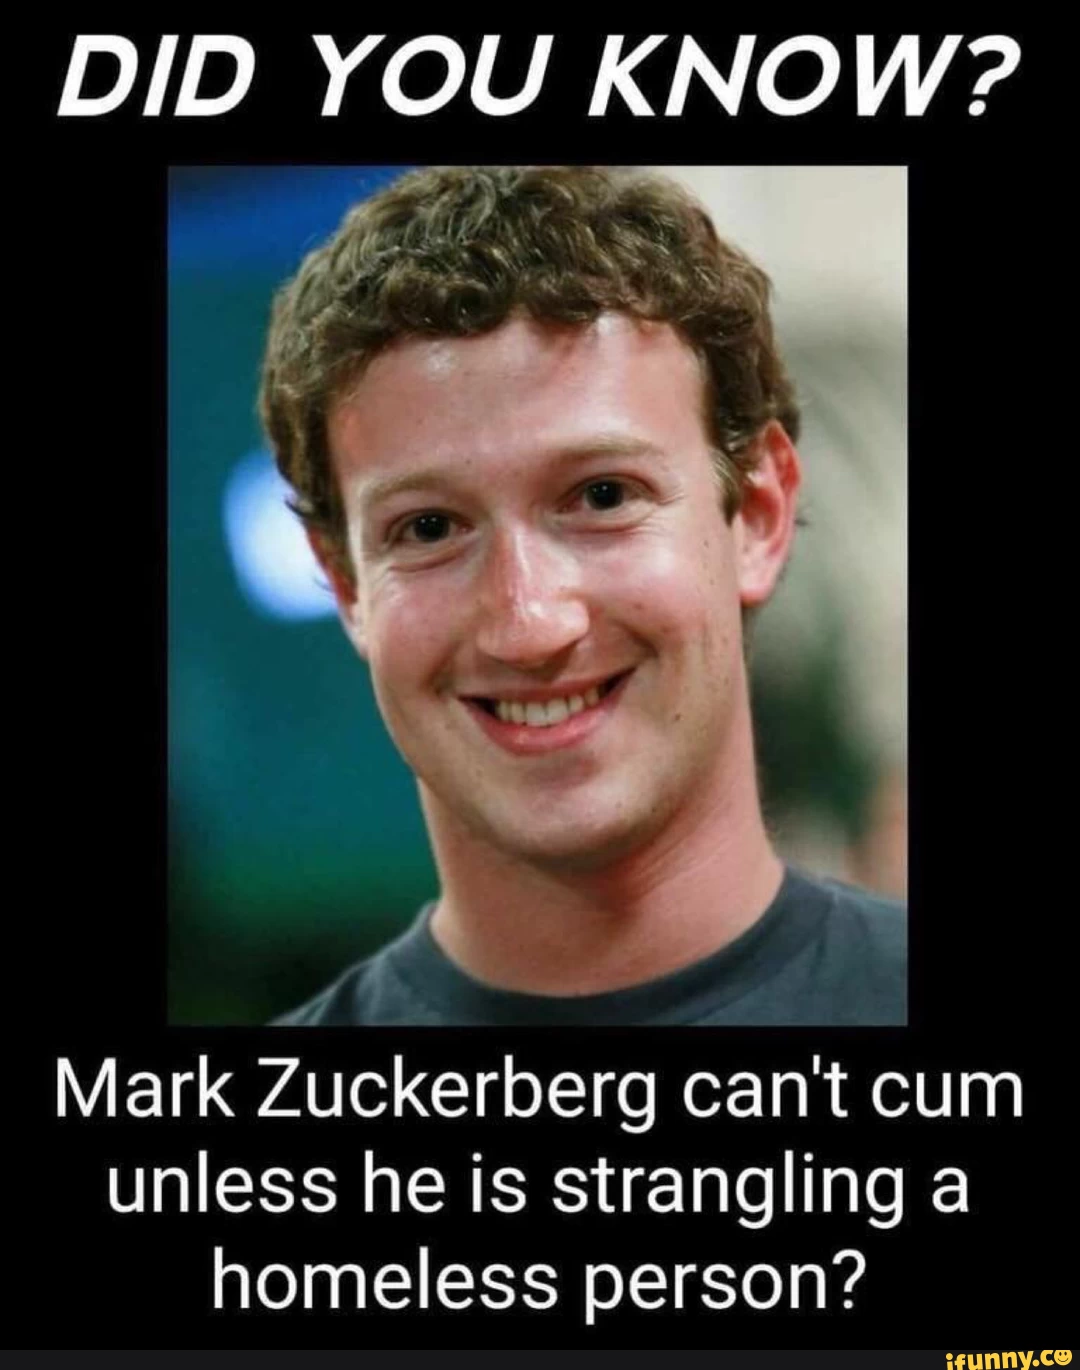 Mark Zuckerberg can't cum
unless he is strangling a
homeless person?